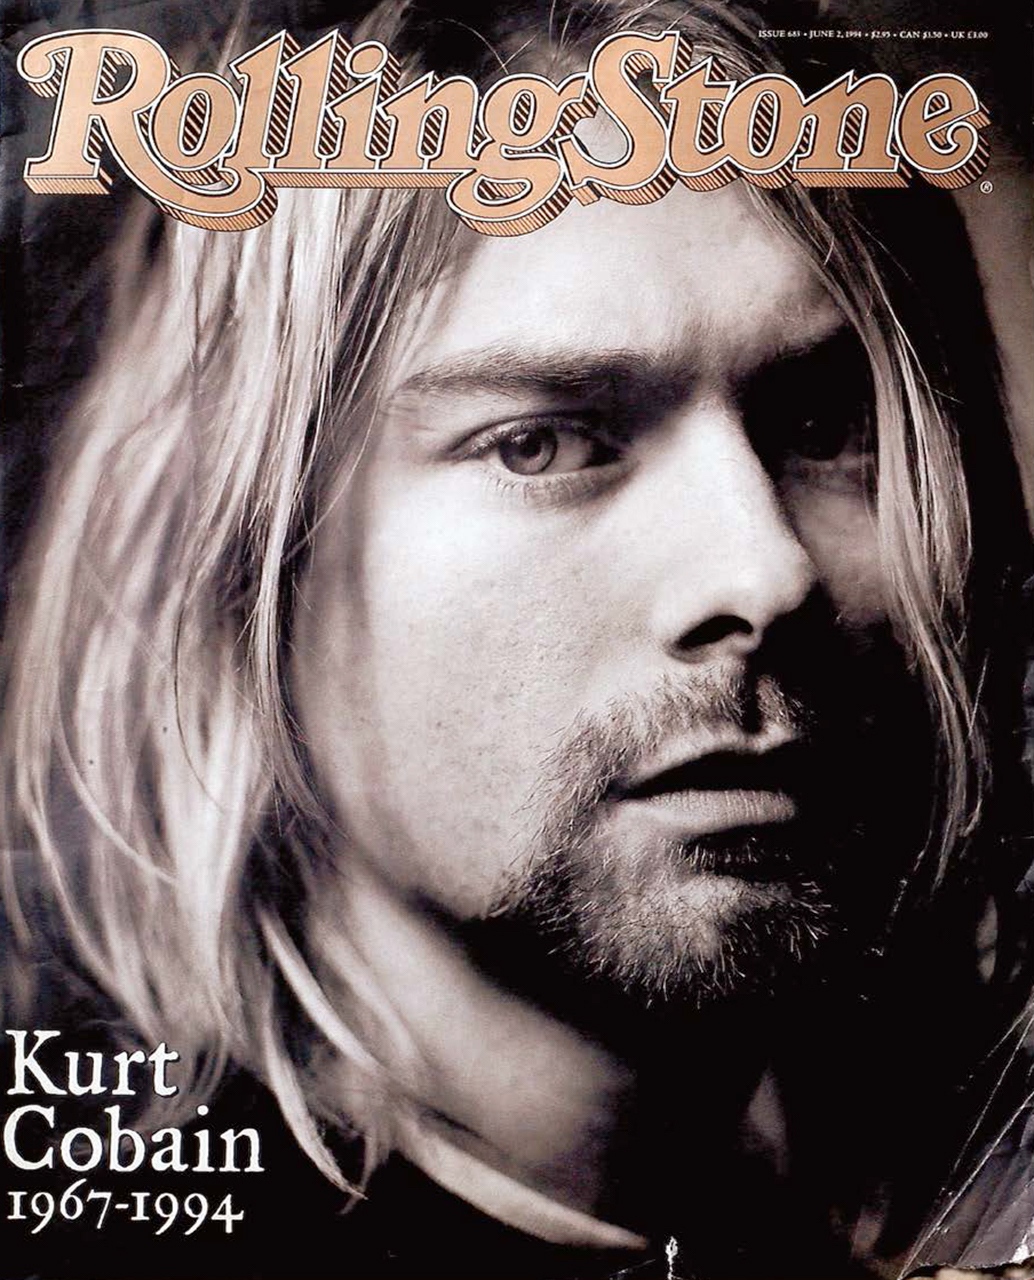 Rolling Stone magazine